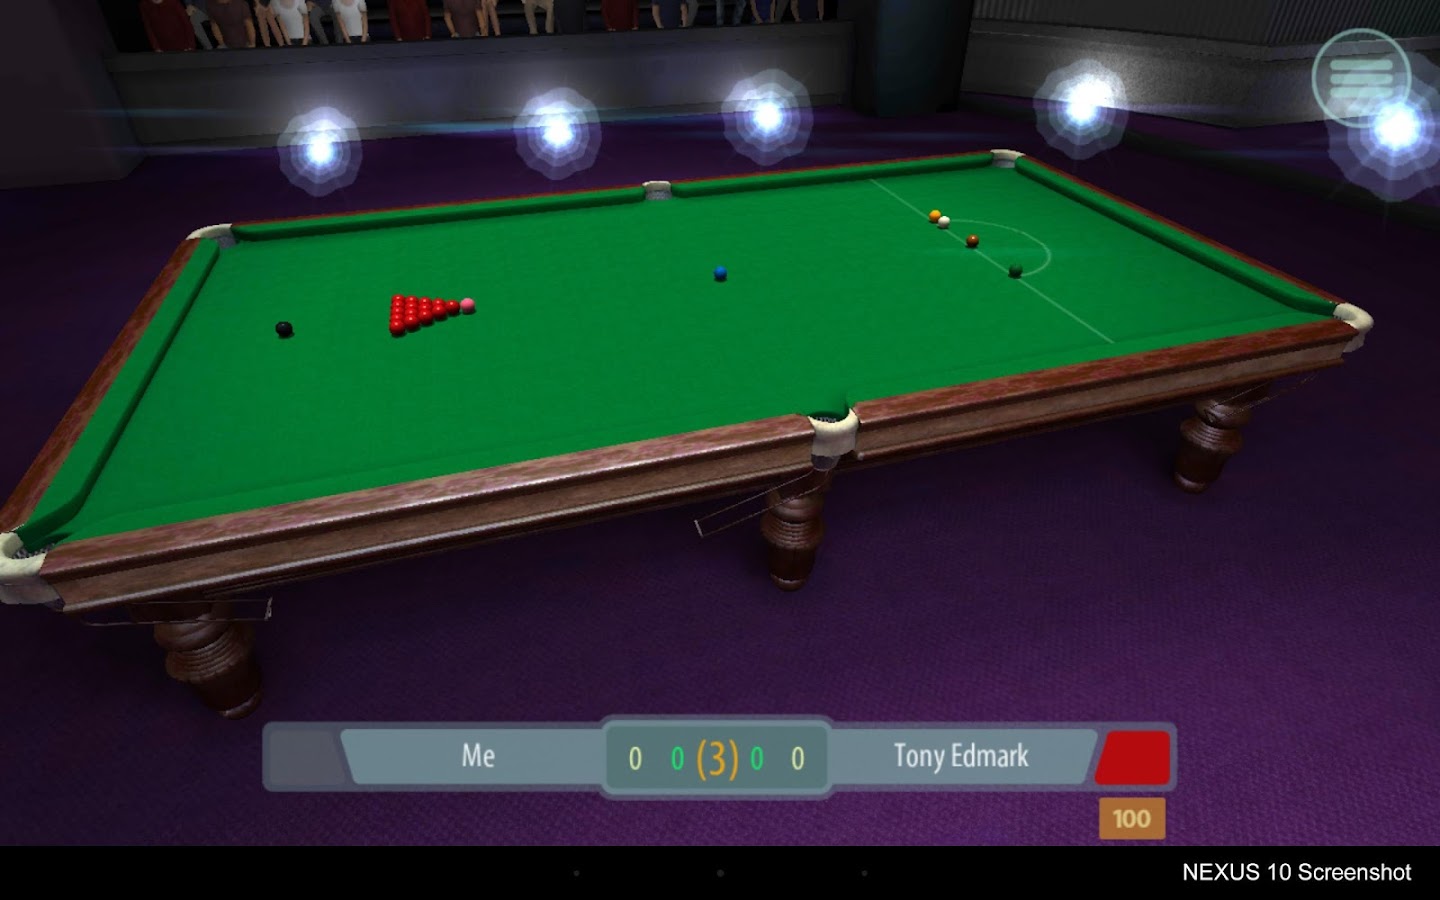    International Snooker League- screenshot  